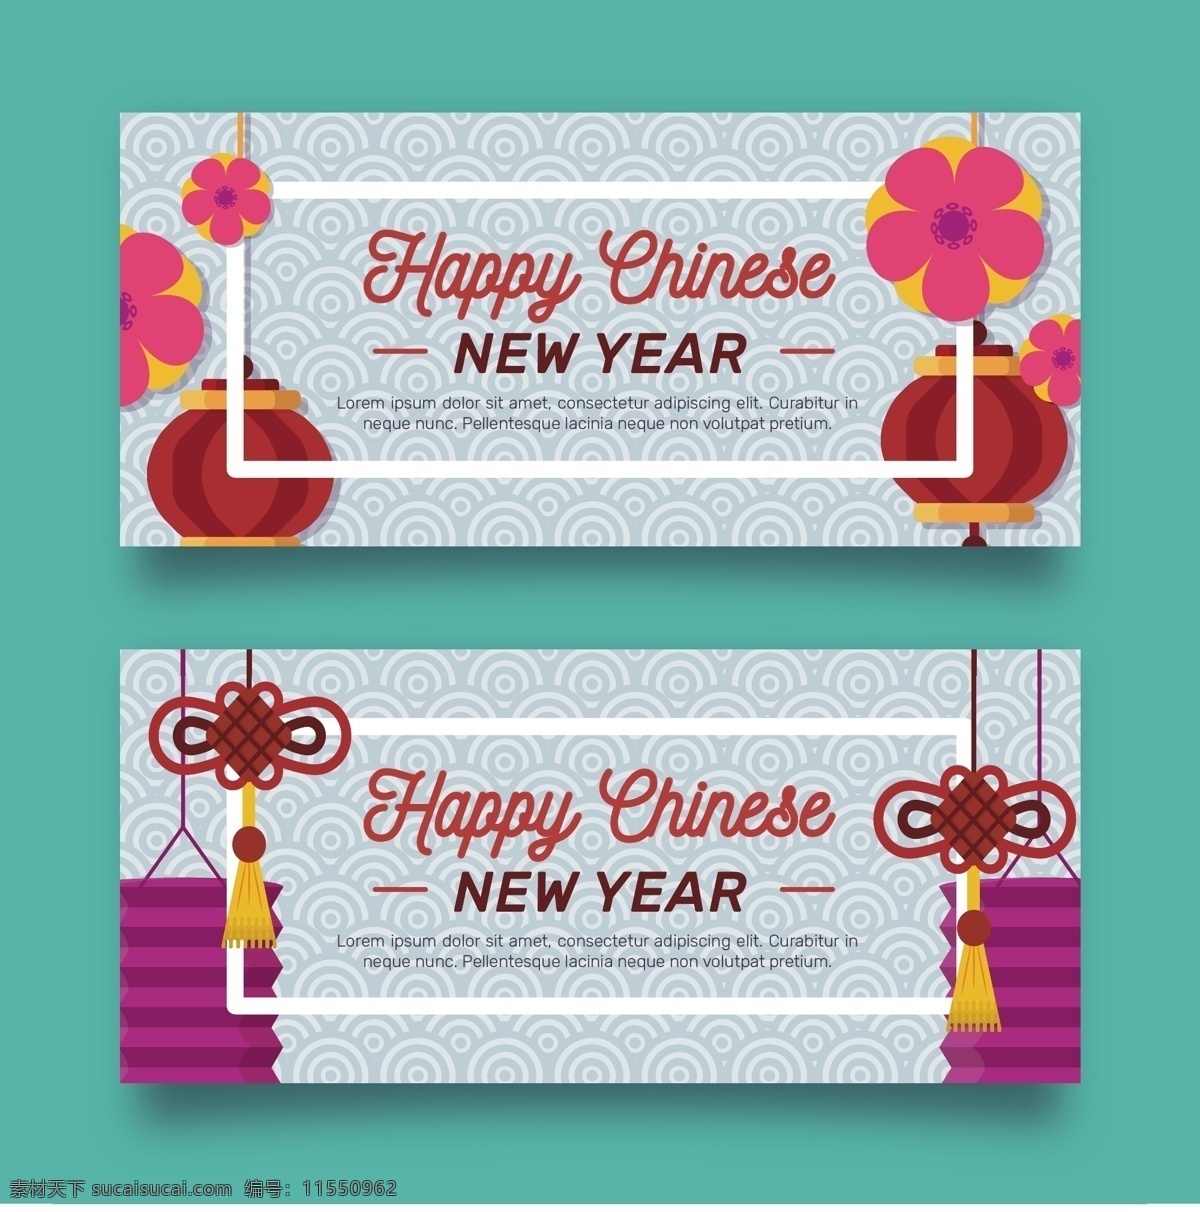 2018 新年 快乐 标签 过年 红包喜庆 节日标签 节日元素 模板 模板素材 年货 年货模板 年货素材 元旦素材